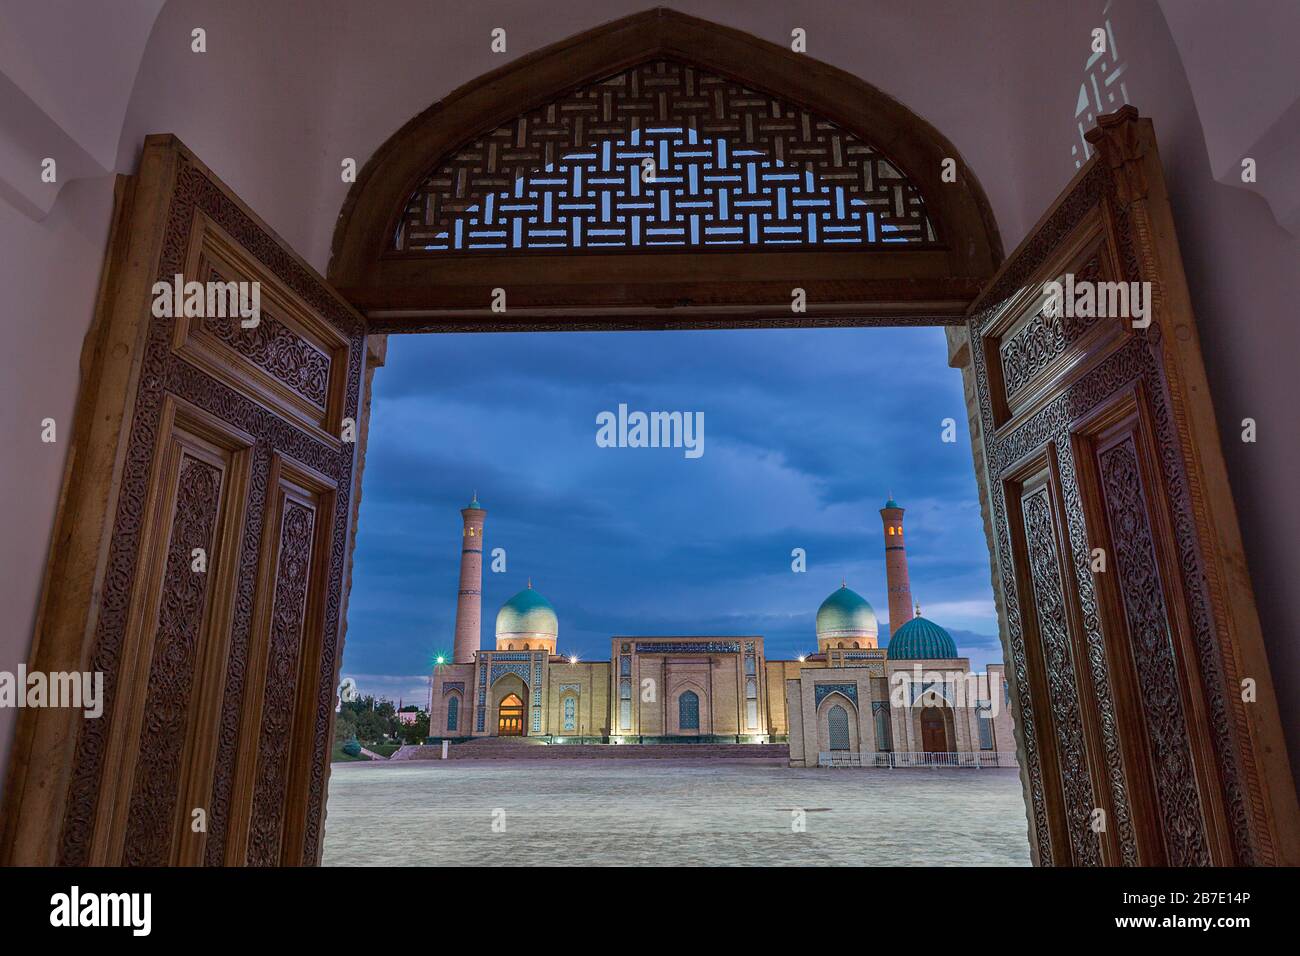 Mosquée de l'Imam hast à travers des portes en bois, Tachkent, Ouzbékistan Banque D'Images